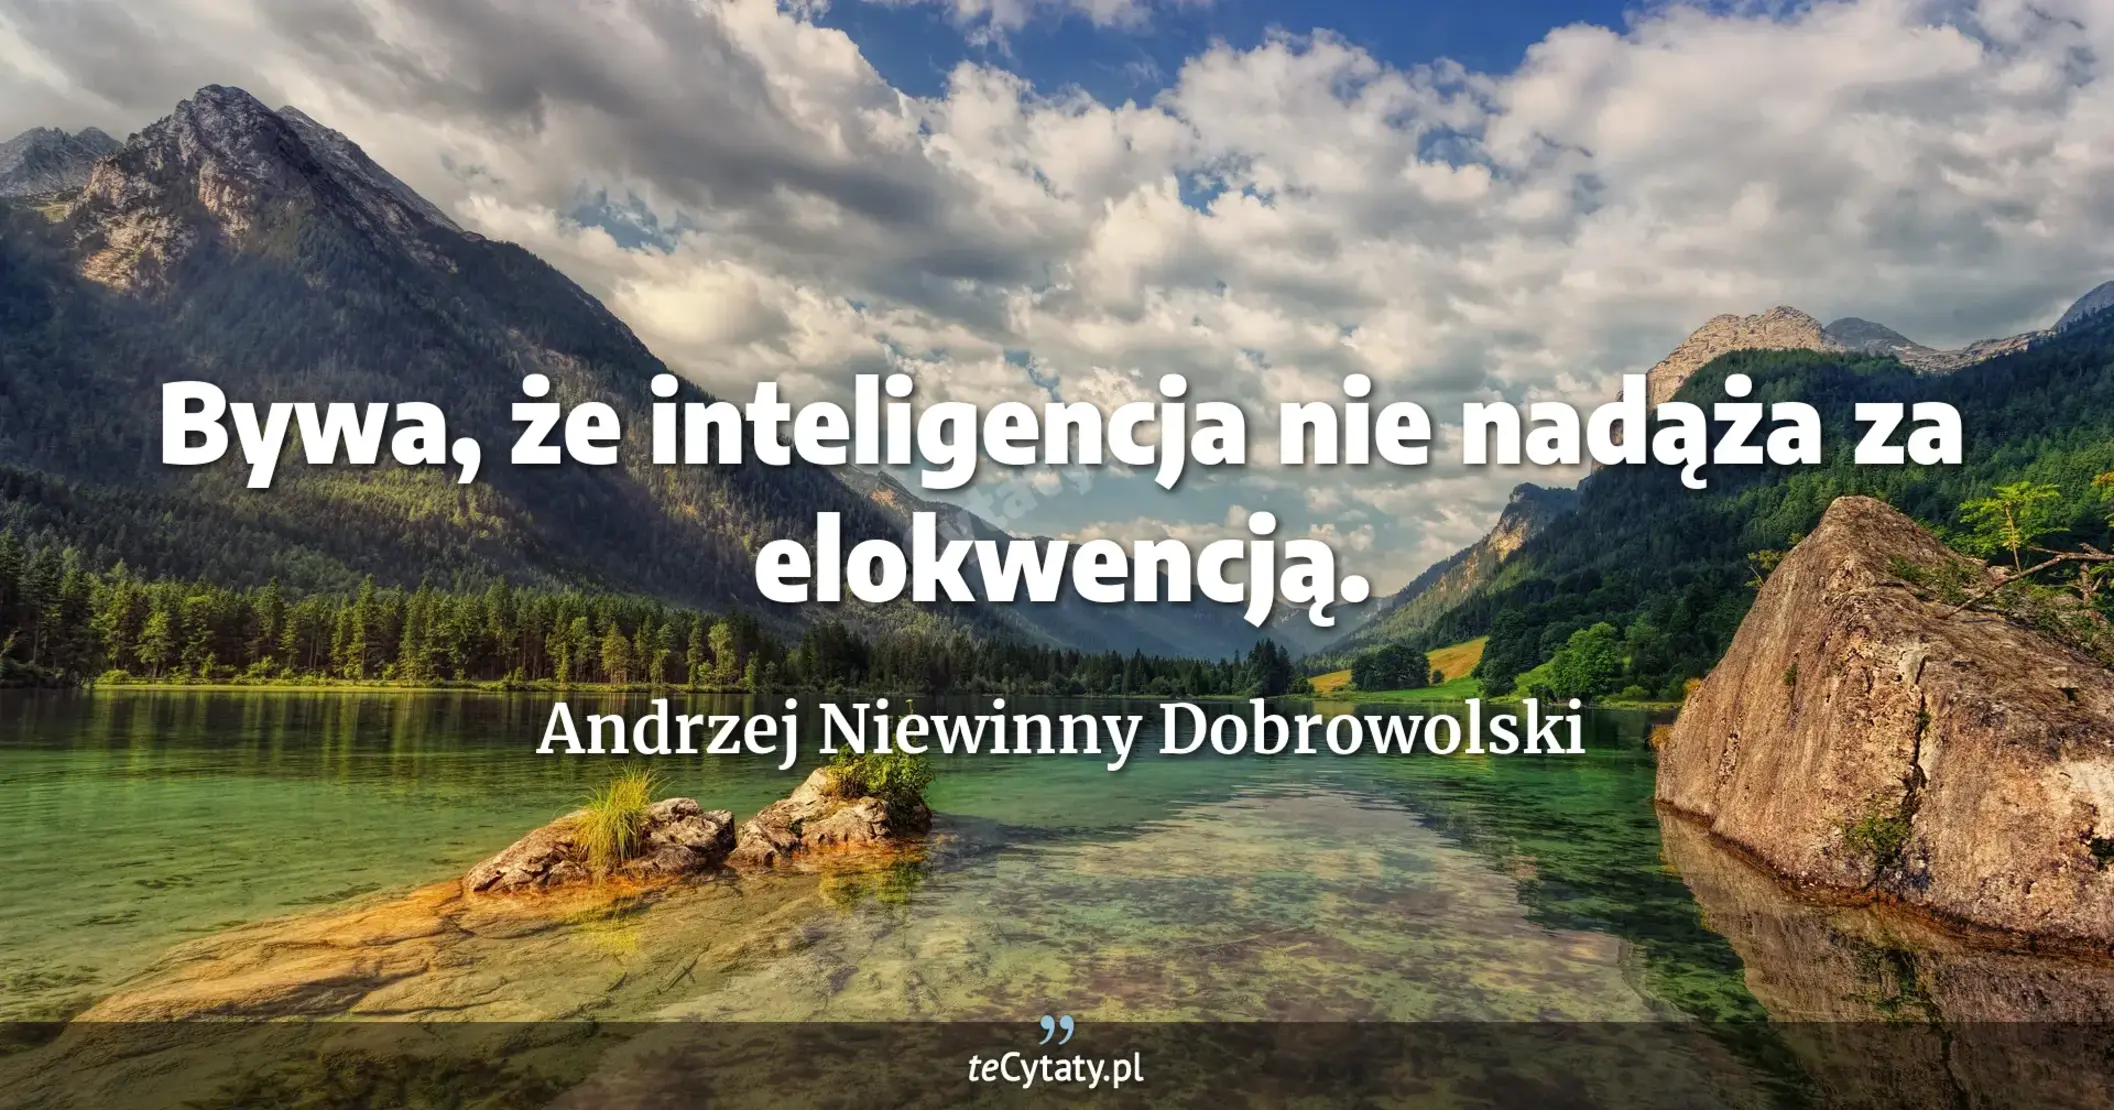 Bywa, że inteligencja nie nadąża za elokwencją. - Andrzej Niewinny Dobrowolski